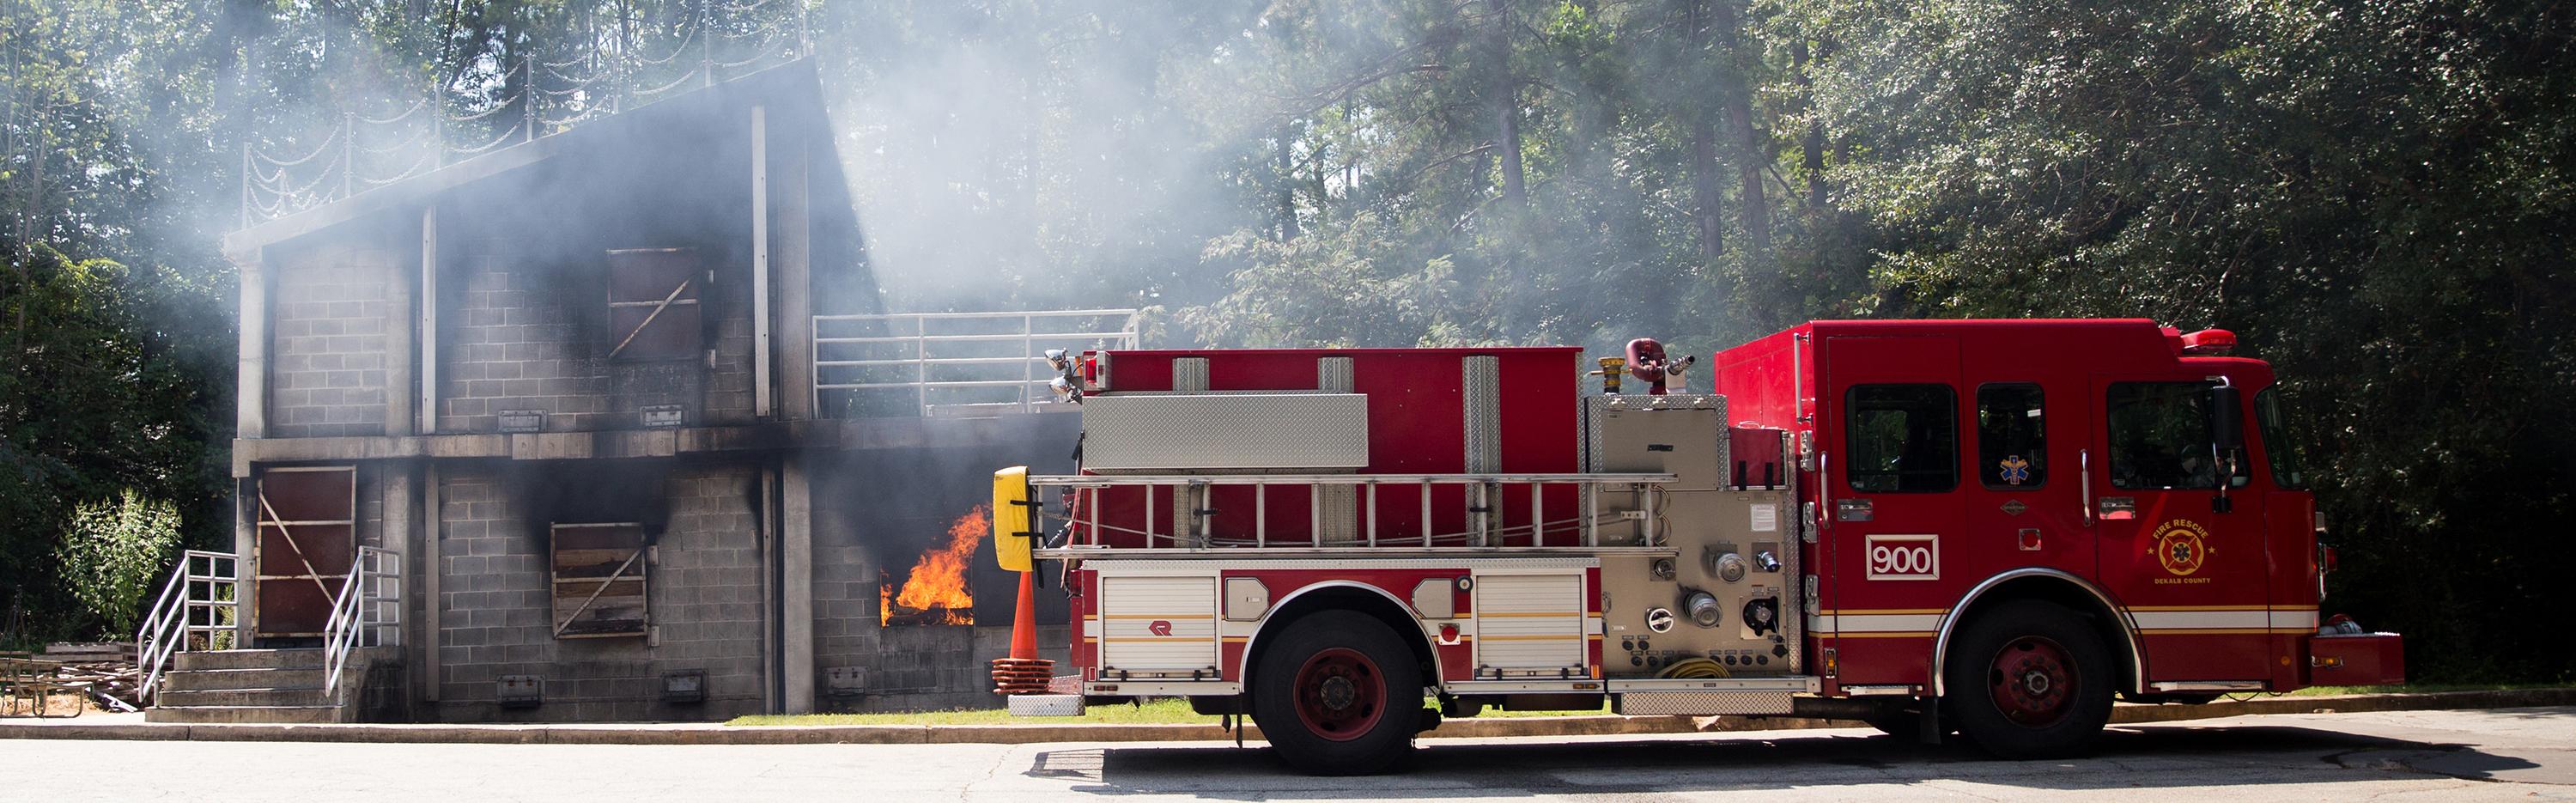 Dekalb County fire truck outside burn building